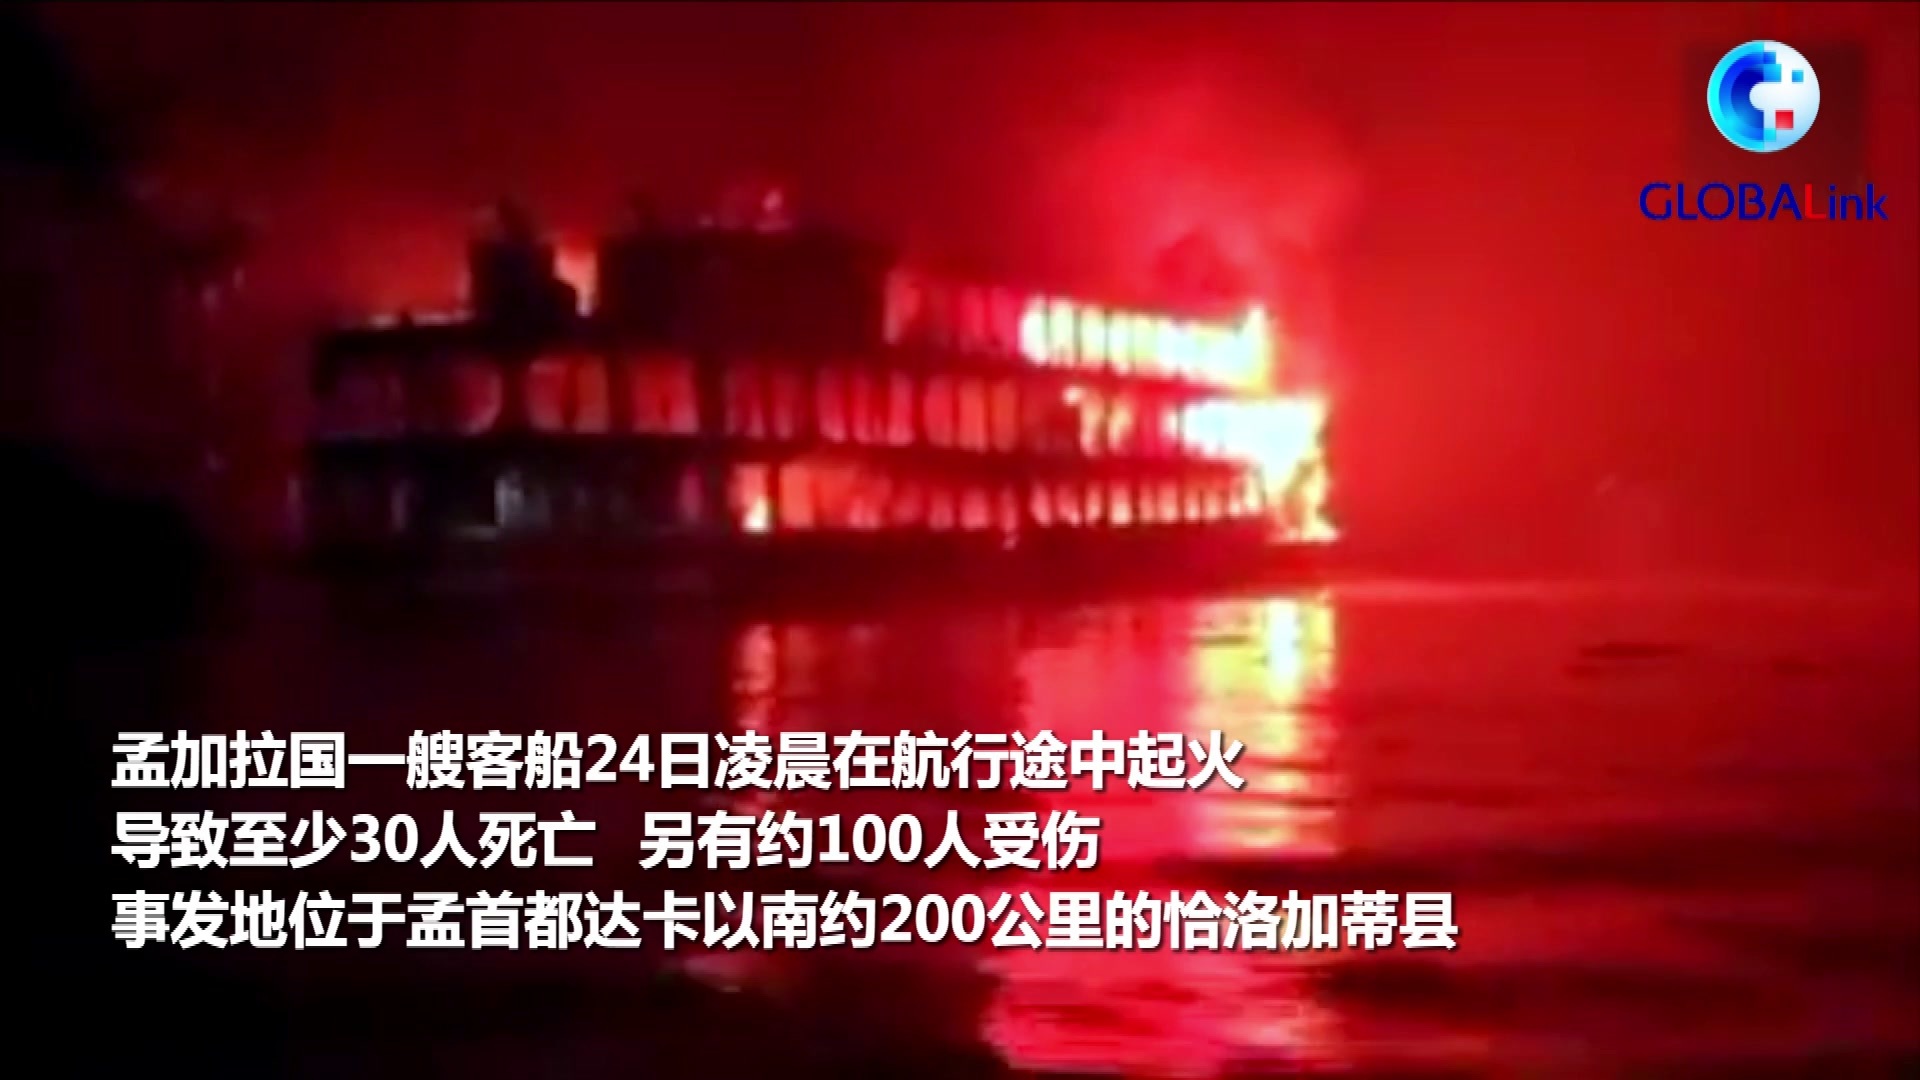 江西新余一临街店铺火灾 致39死9伤_凤凰网视频_凤凰网